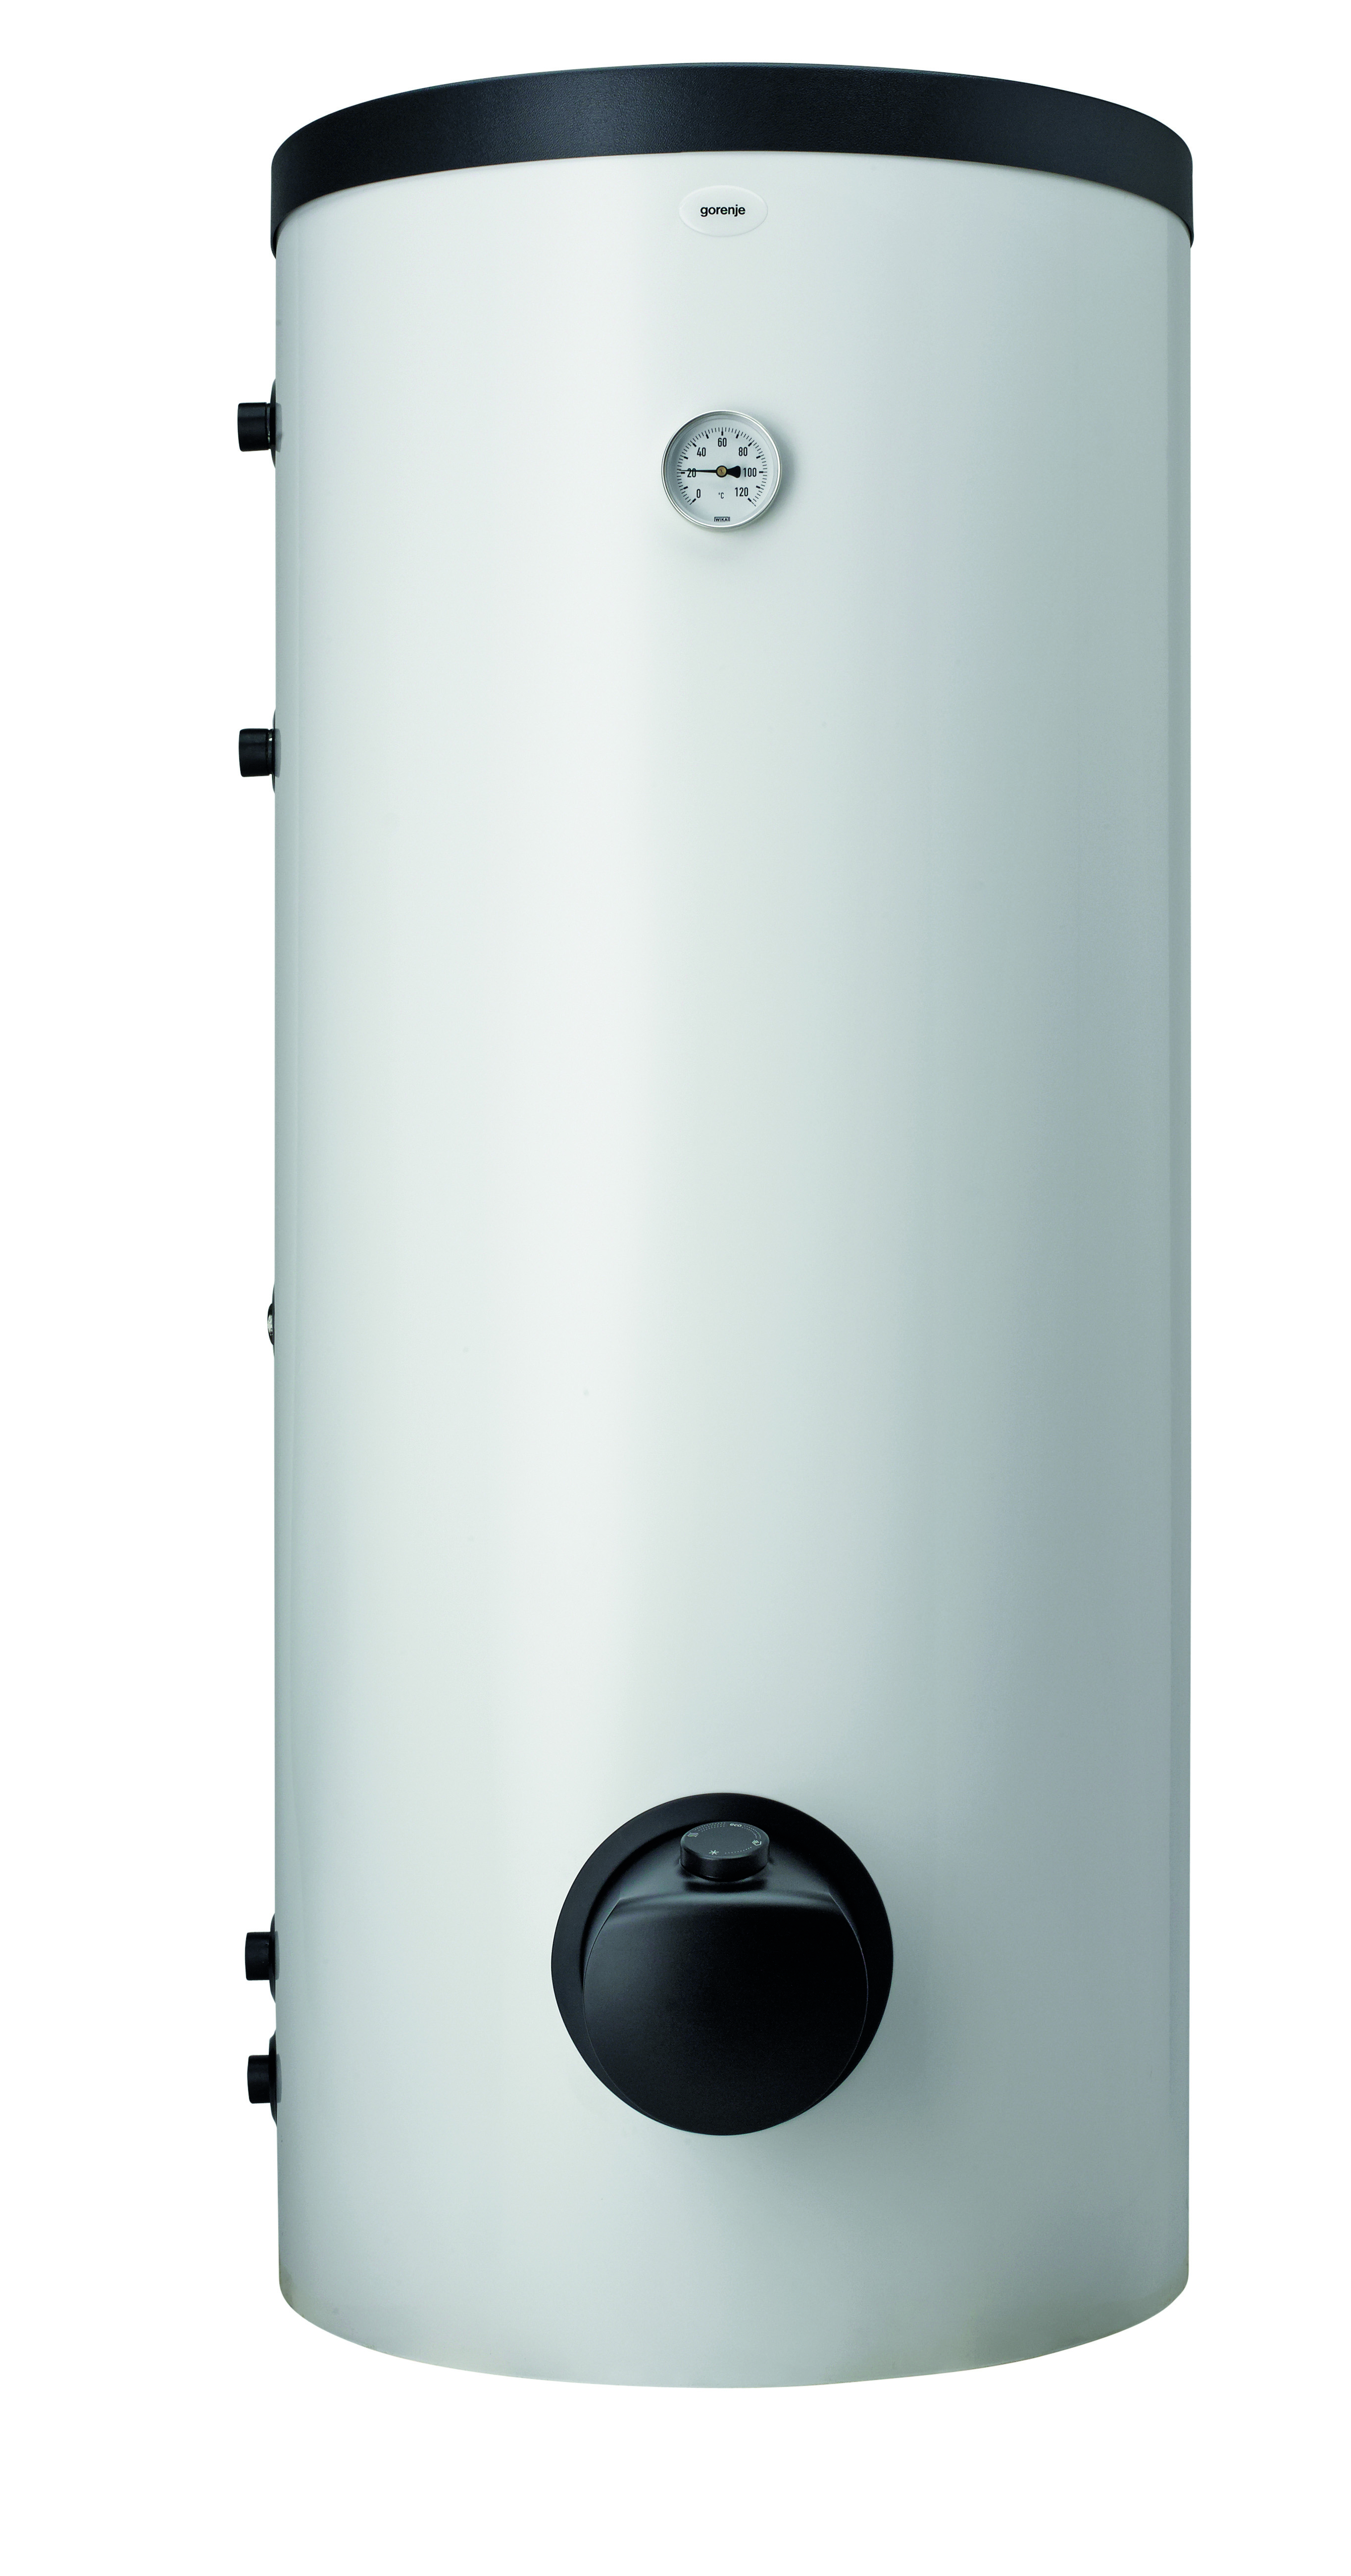 Комбинированный водонагреватель Gorenje VLG300B1-1G3 в интернет-магазине, главное фото